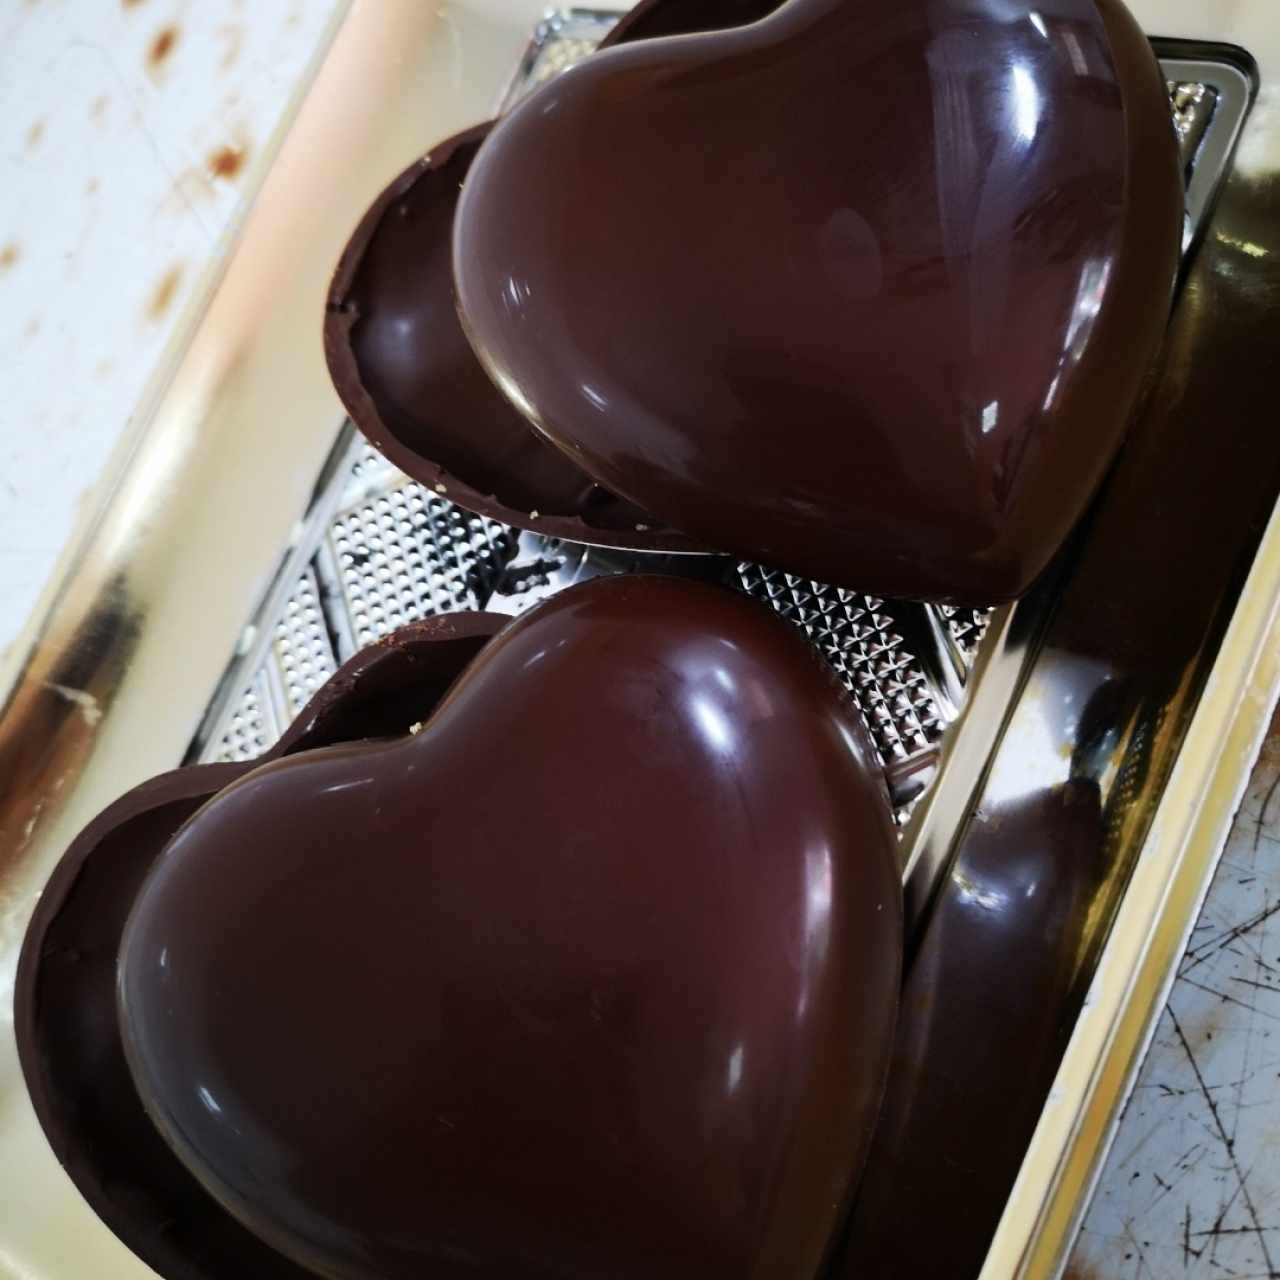 Corazones 💕 de Chocolate 😍